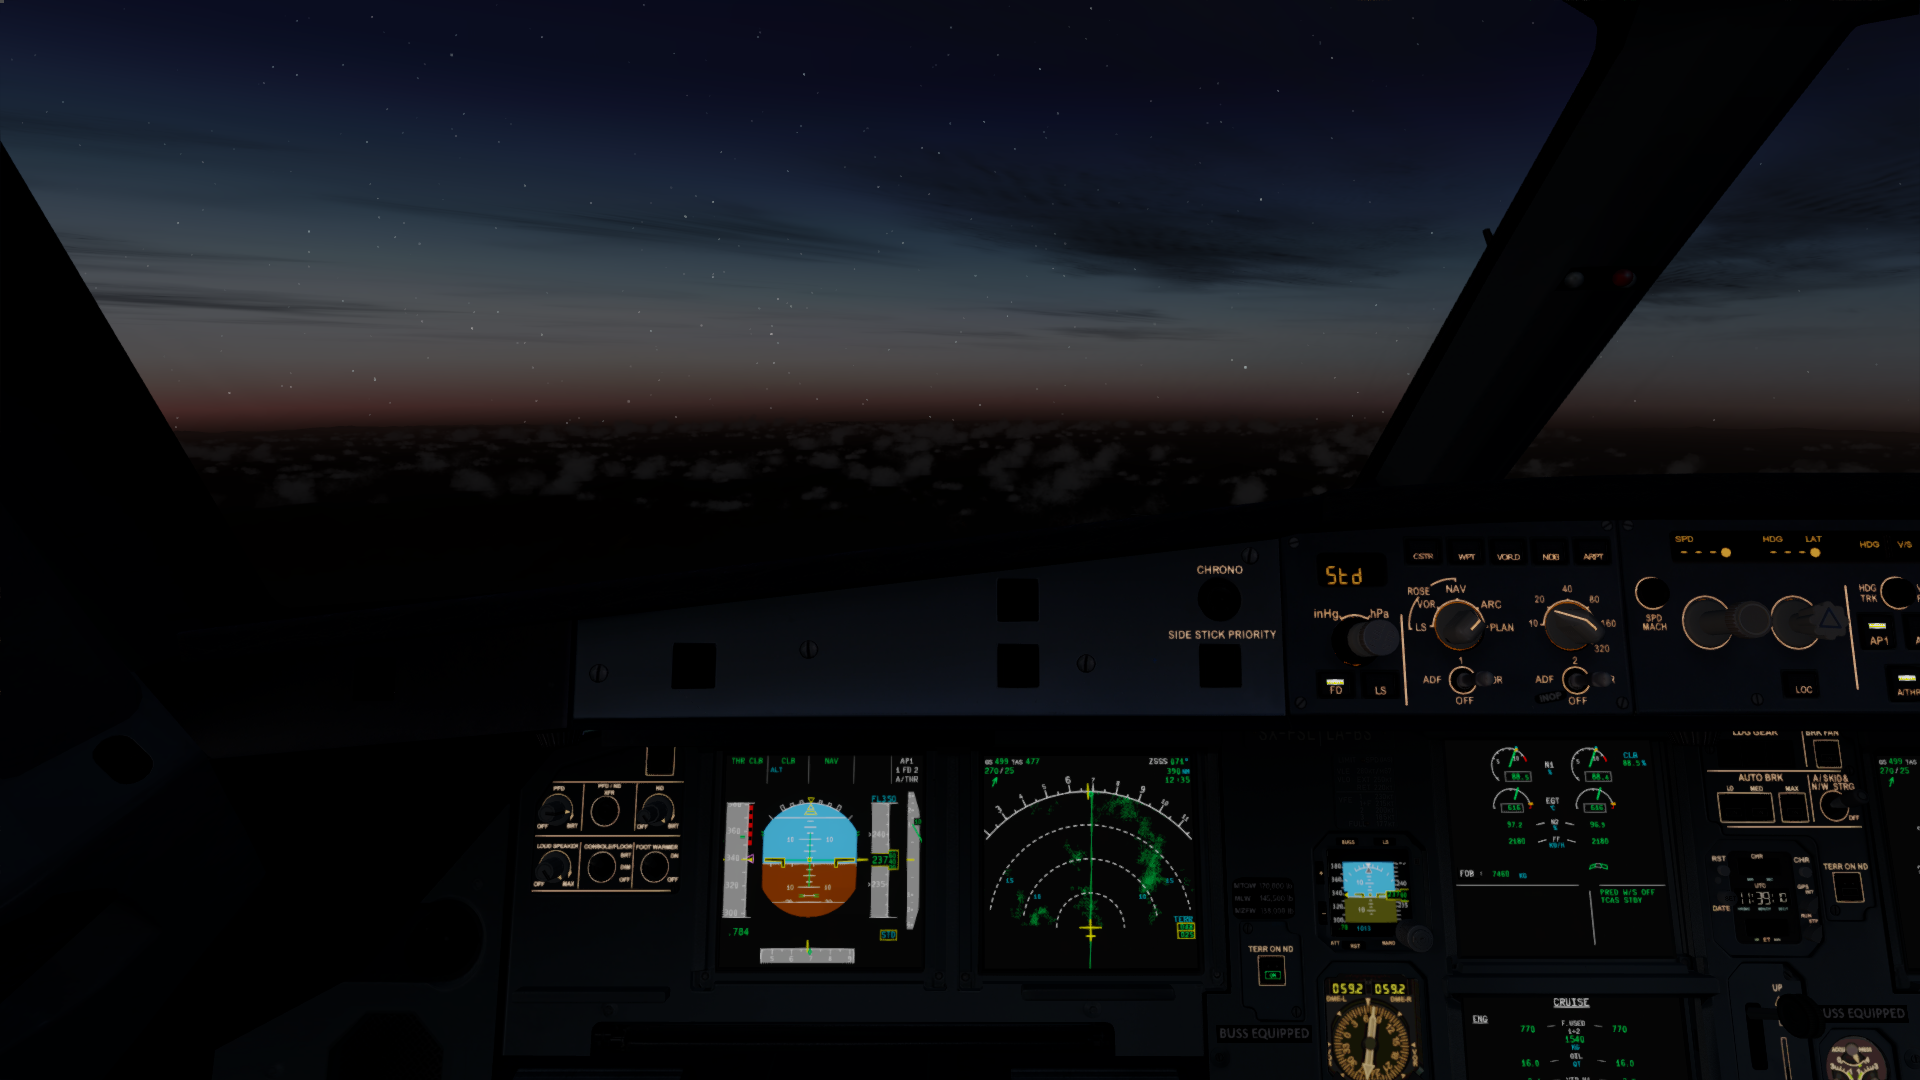 A320夜航-7411 